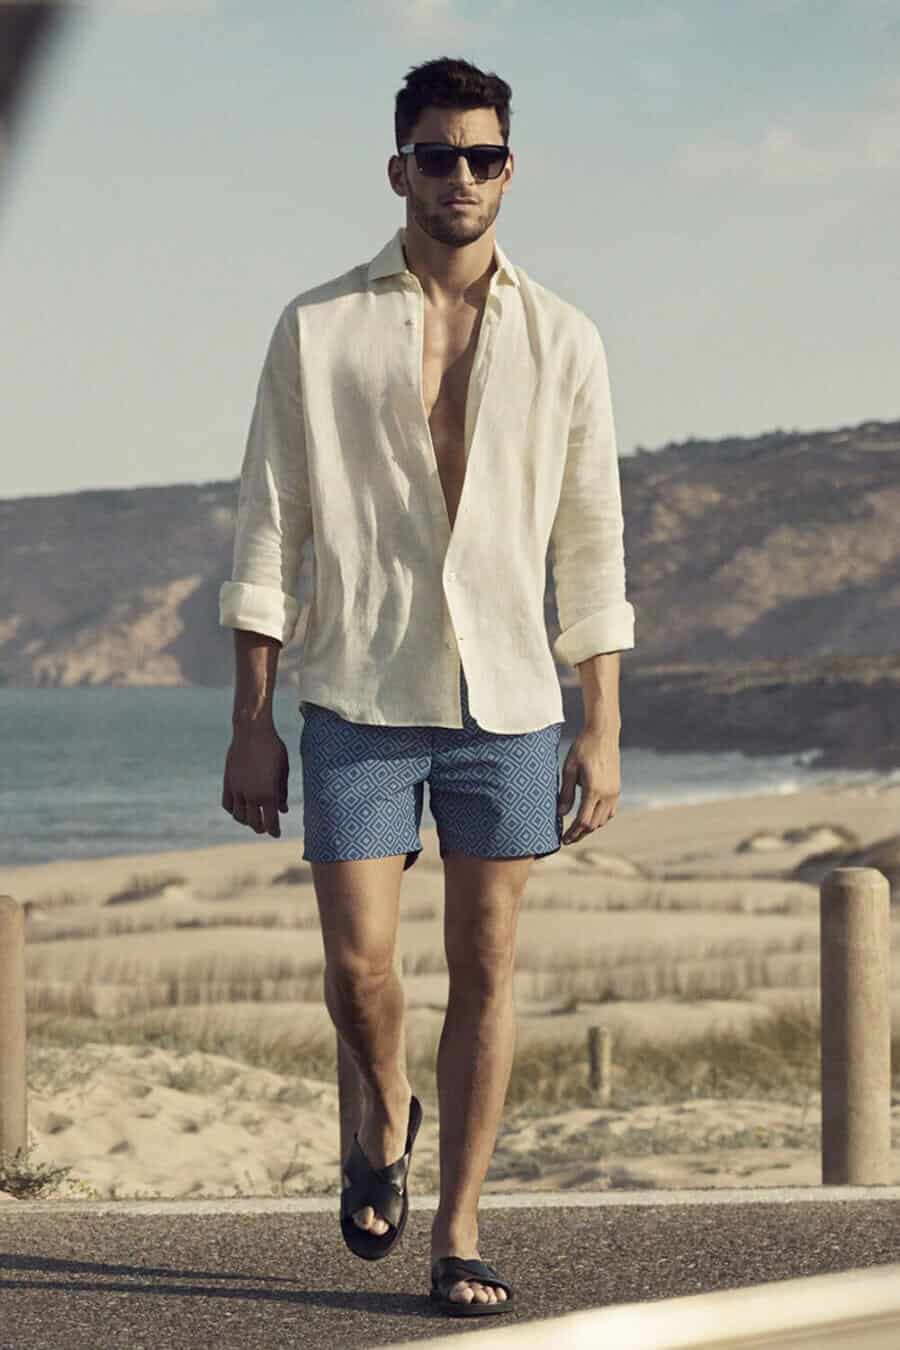 Men's beach summer outfit - swim shorts, sandals and open linen shirt